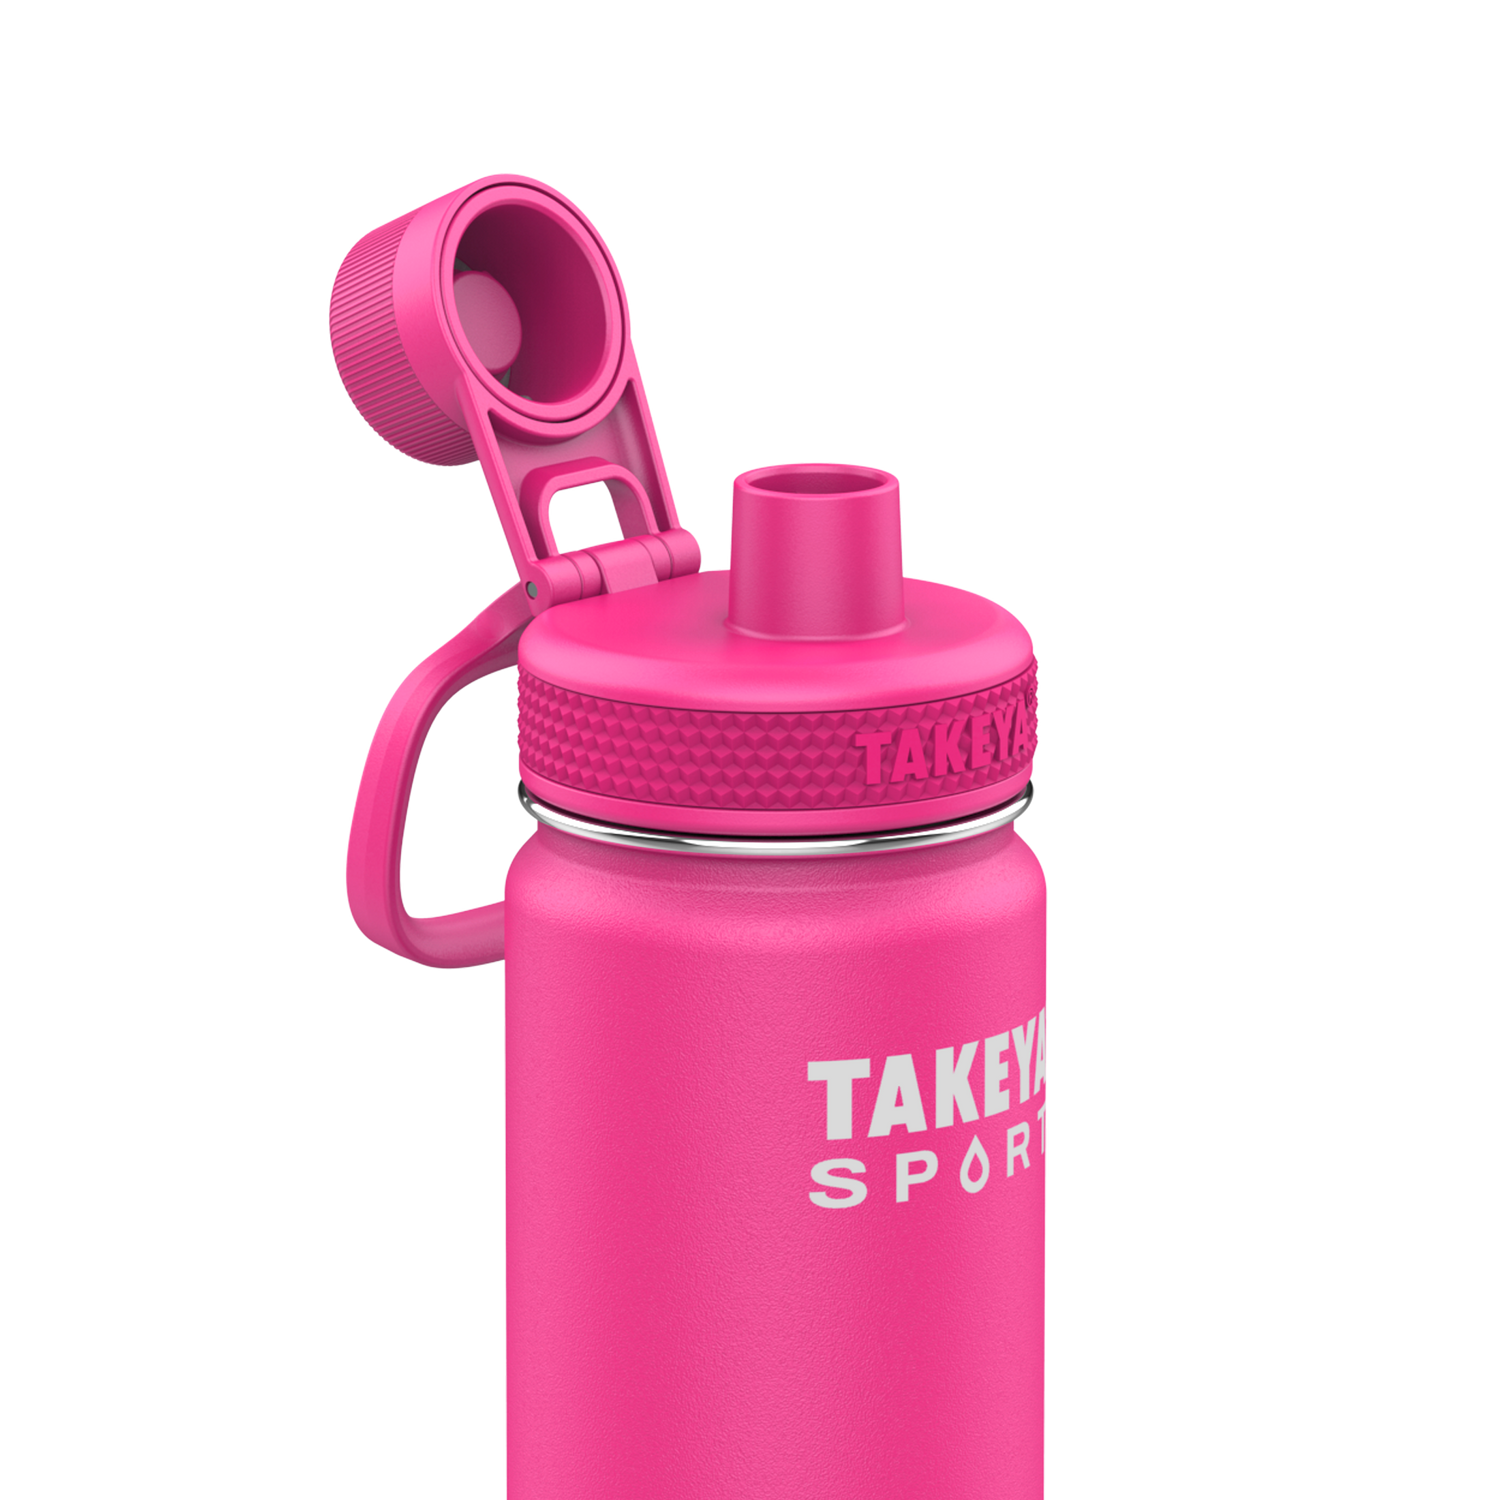 TAKEYA®  Water Bottles for Sport + Fitness – Takeya USA